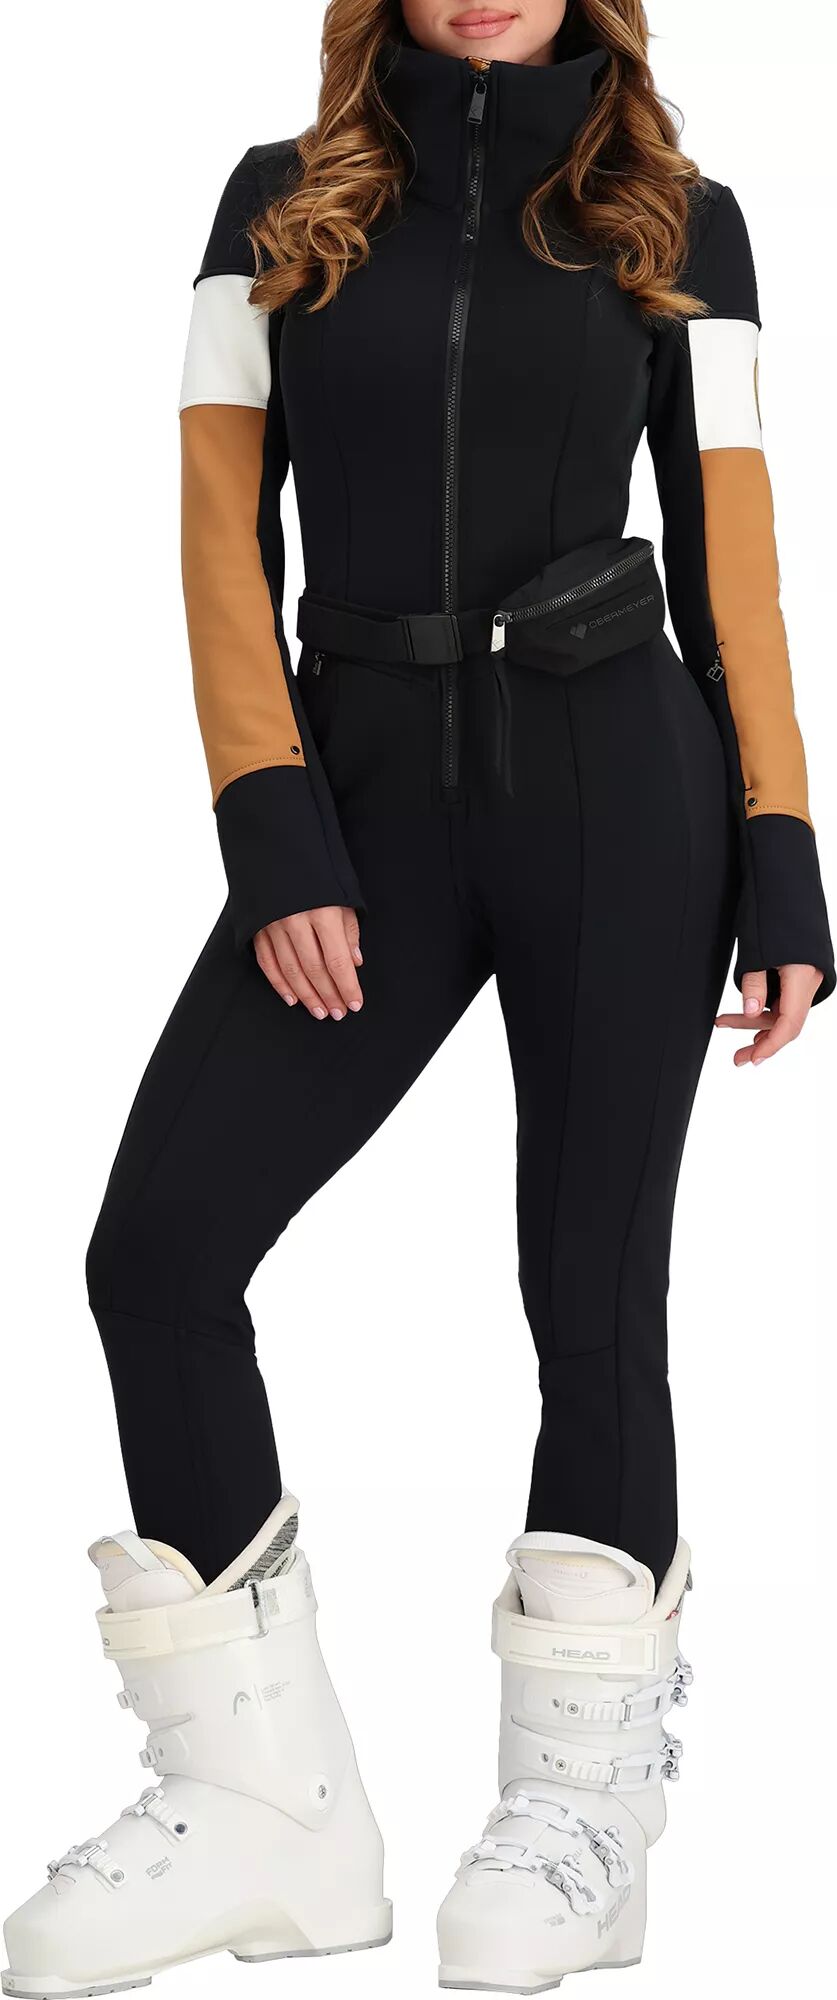 Photos - Ski Wear Obermeyer Women's Kitt ITB Softshell Suit, Size 8, Brown 23obewwktzstxxxxx